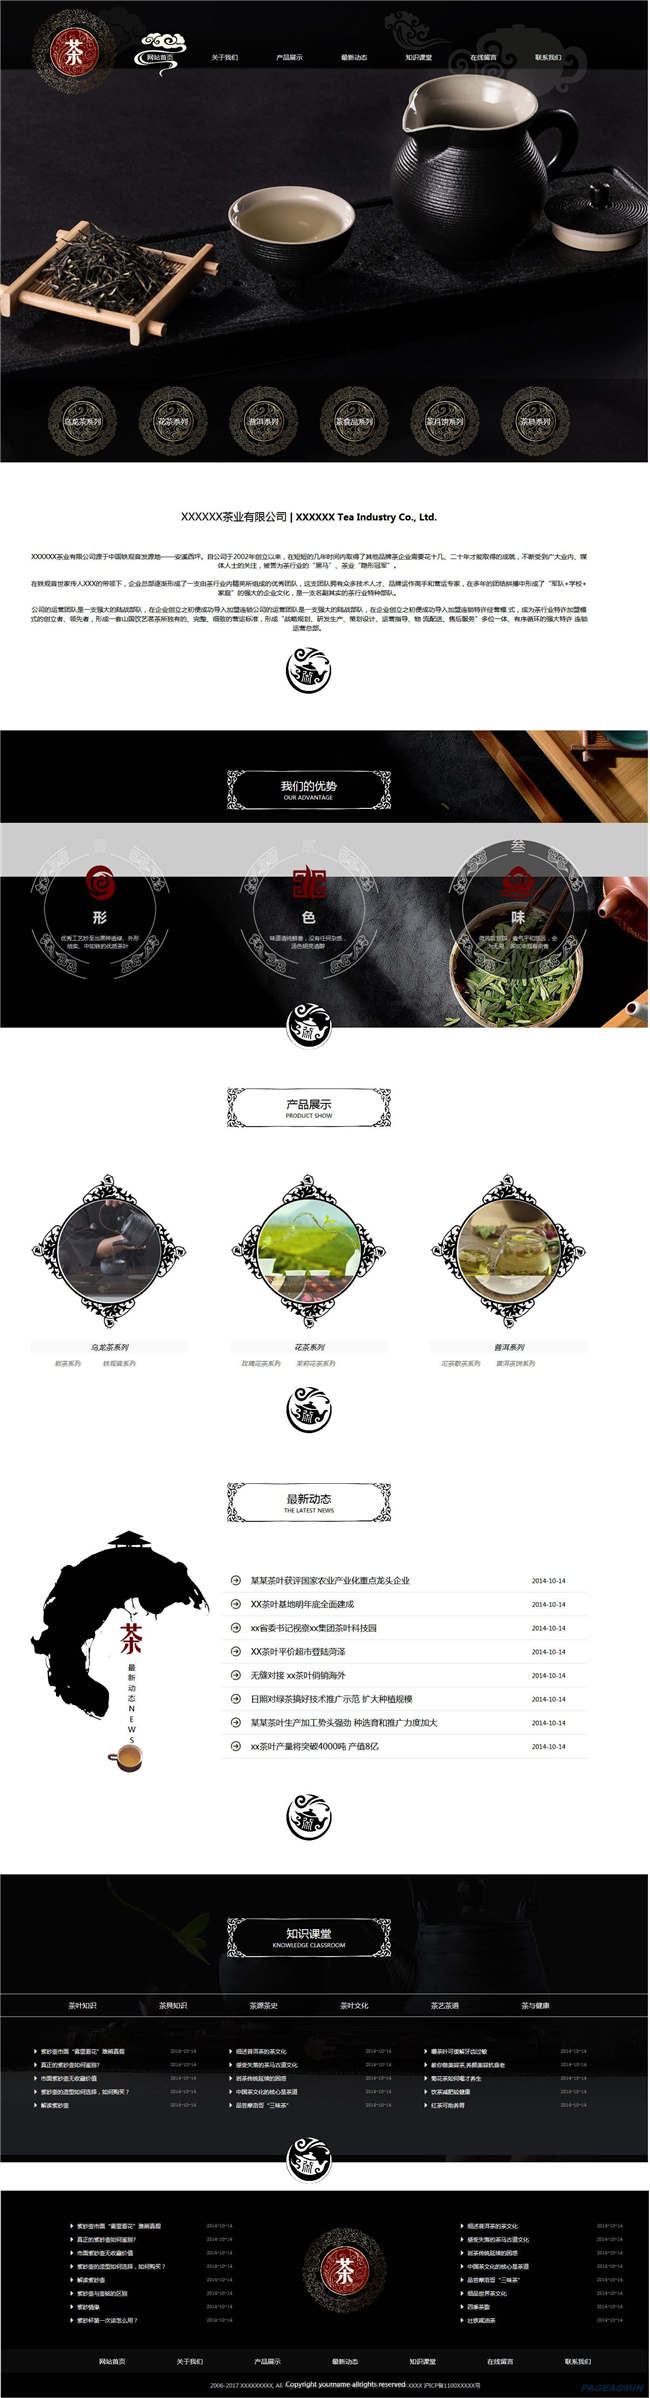 茶叶公司食品饮料生鲜茶酒茶叶类网站WordPress主题模板演示图